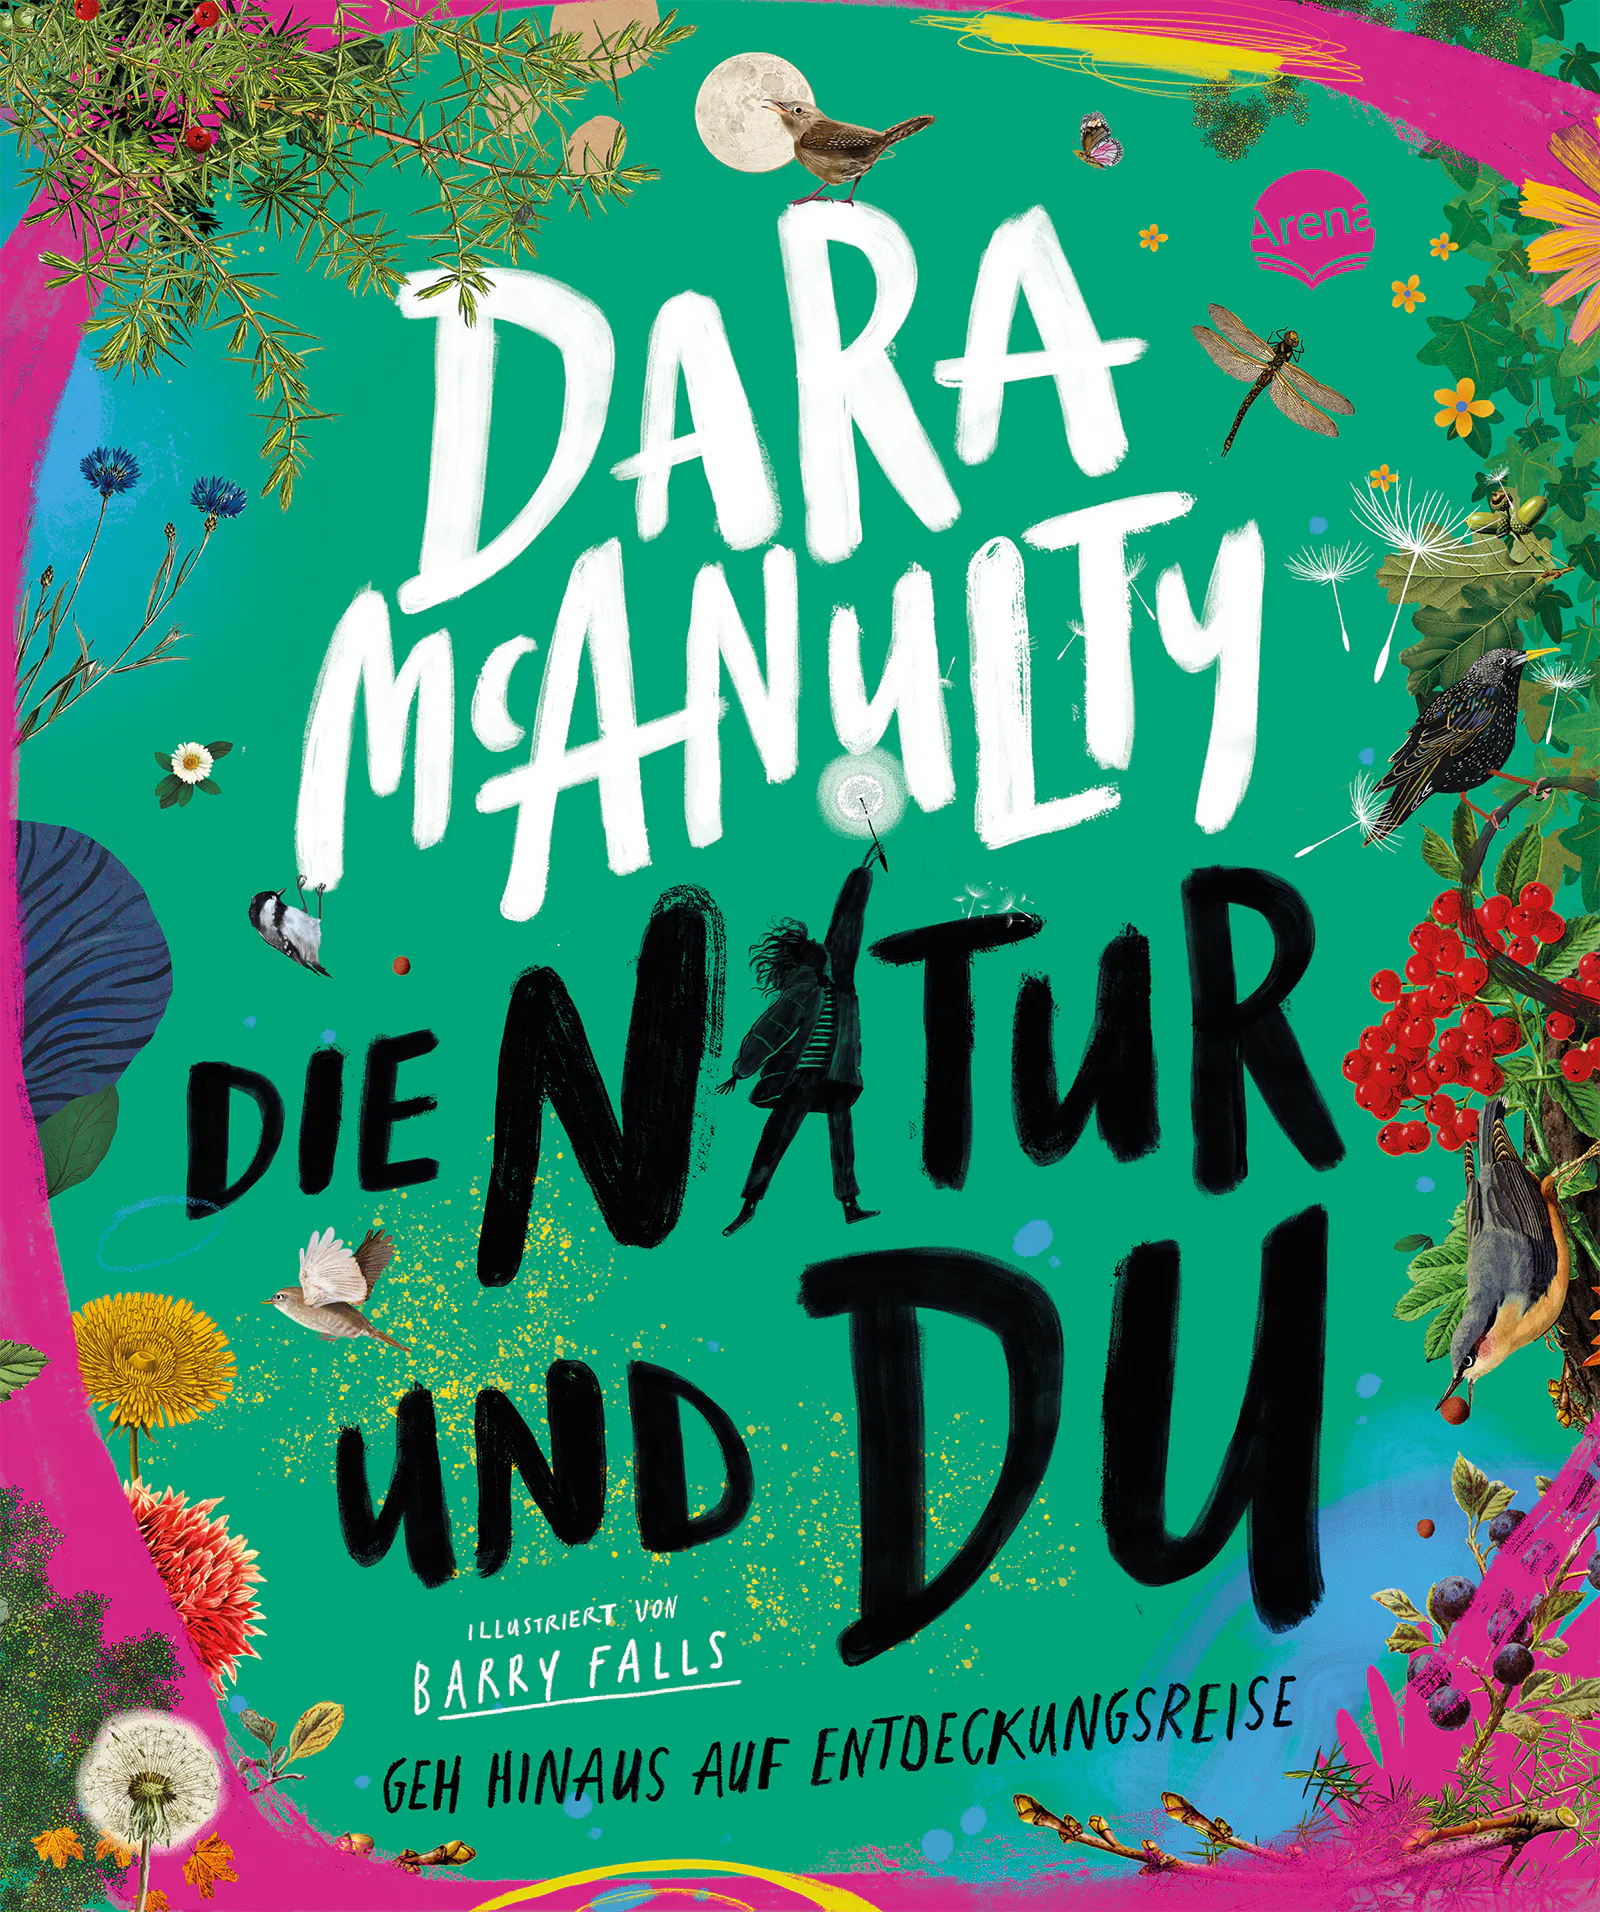 Cover von "Die Natur und du - geh hinaus auf Entdeckungsreise" von Dara McAnulty, erschienen im Arena Verlag.